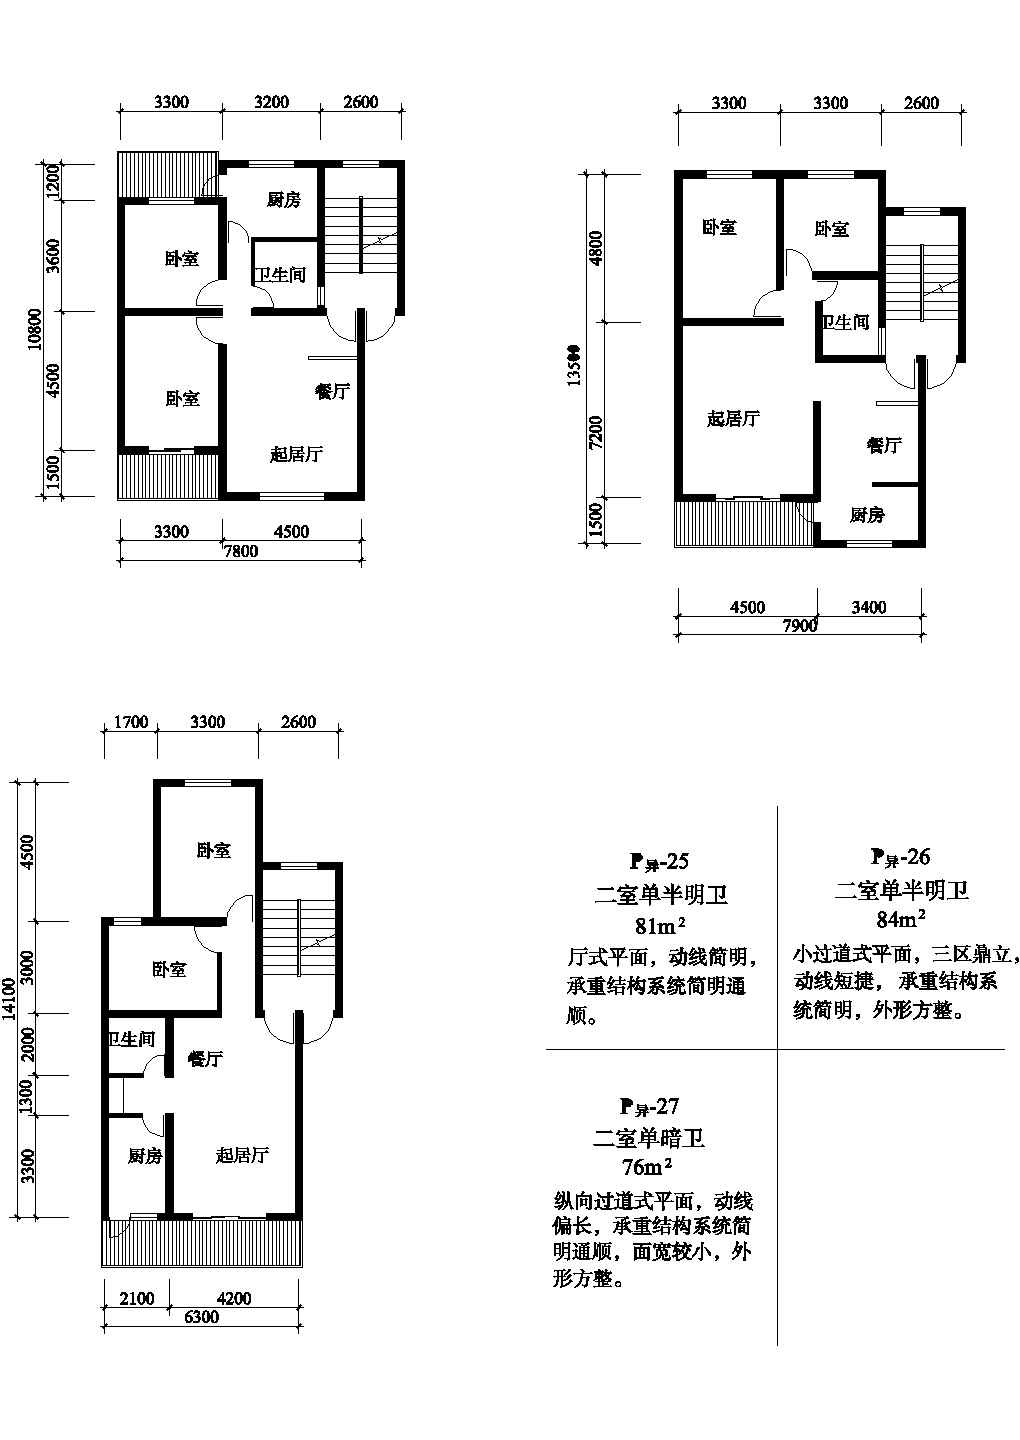 二室81/76/84平方单元式住宅平面图纸